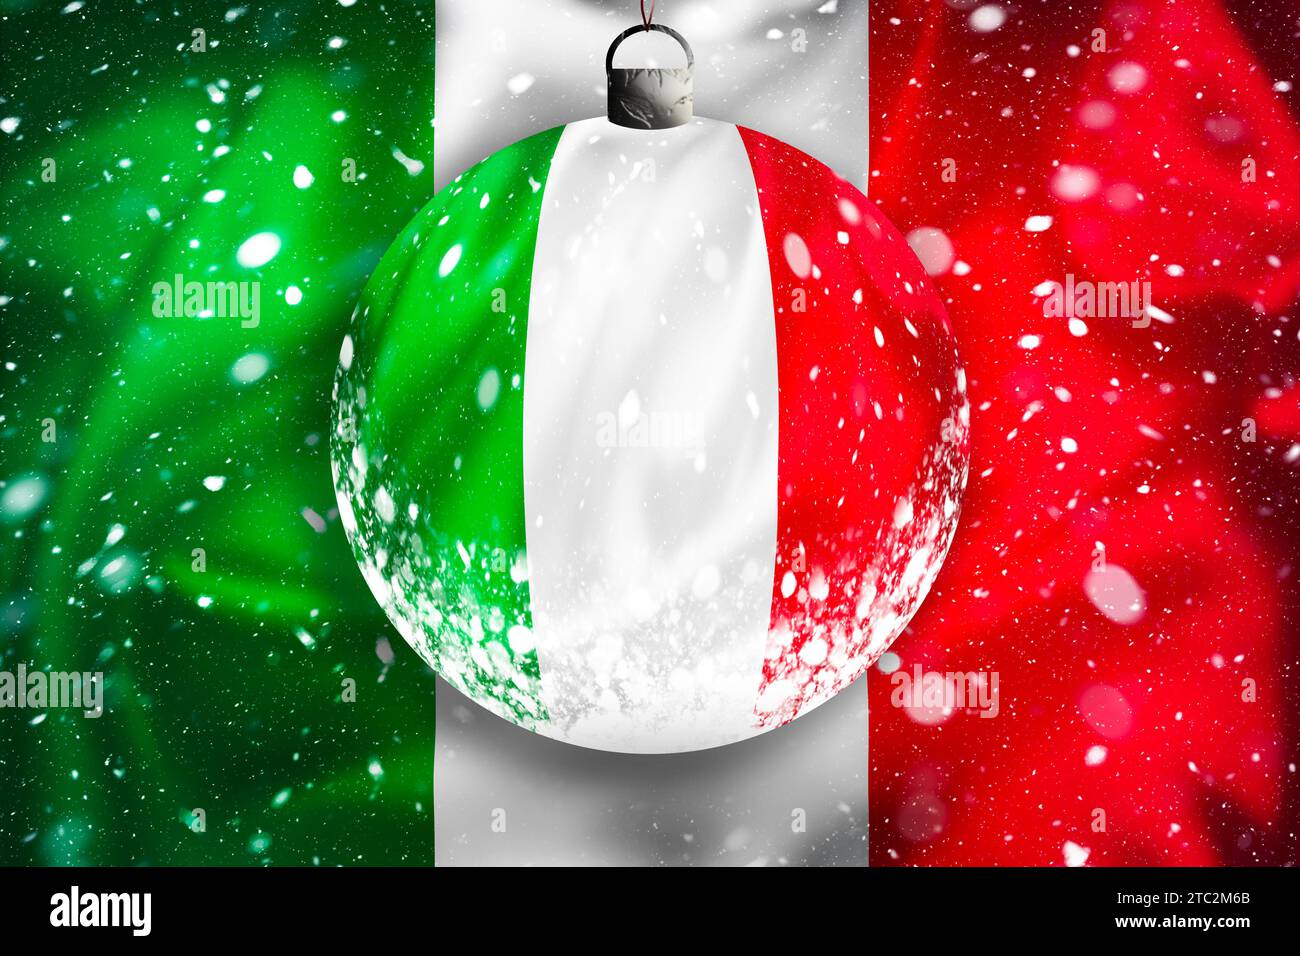 Italy flag snow view through glass Christmas ball, xmas season illustration, Rome, Italy Stock Photo